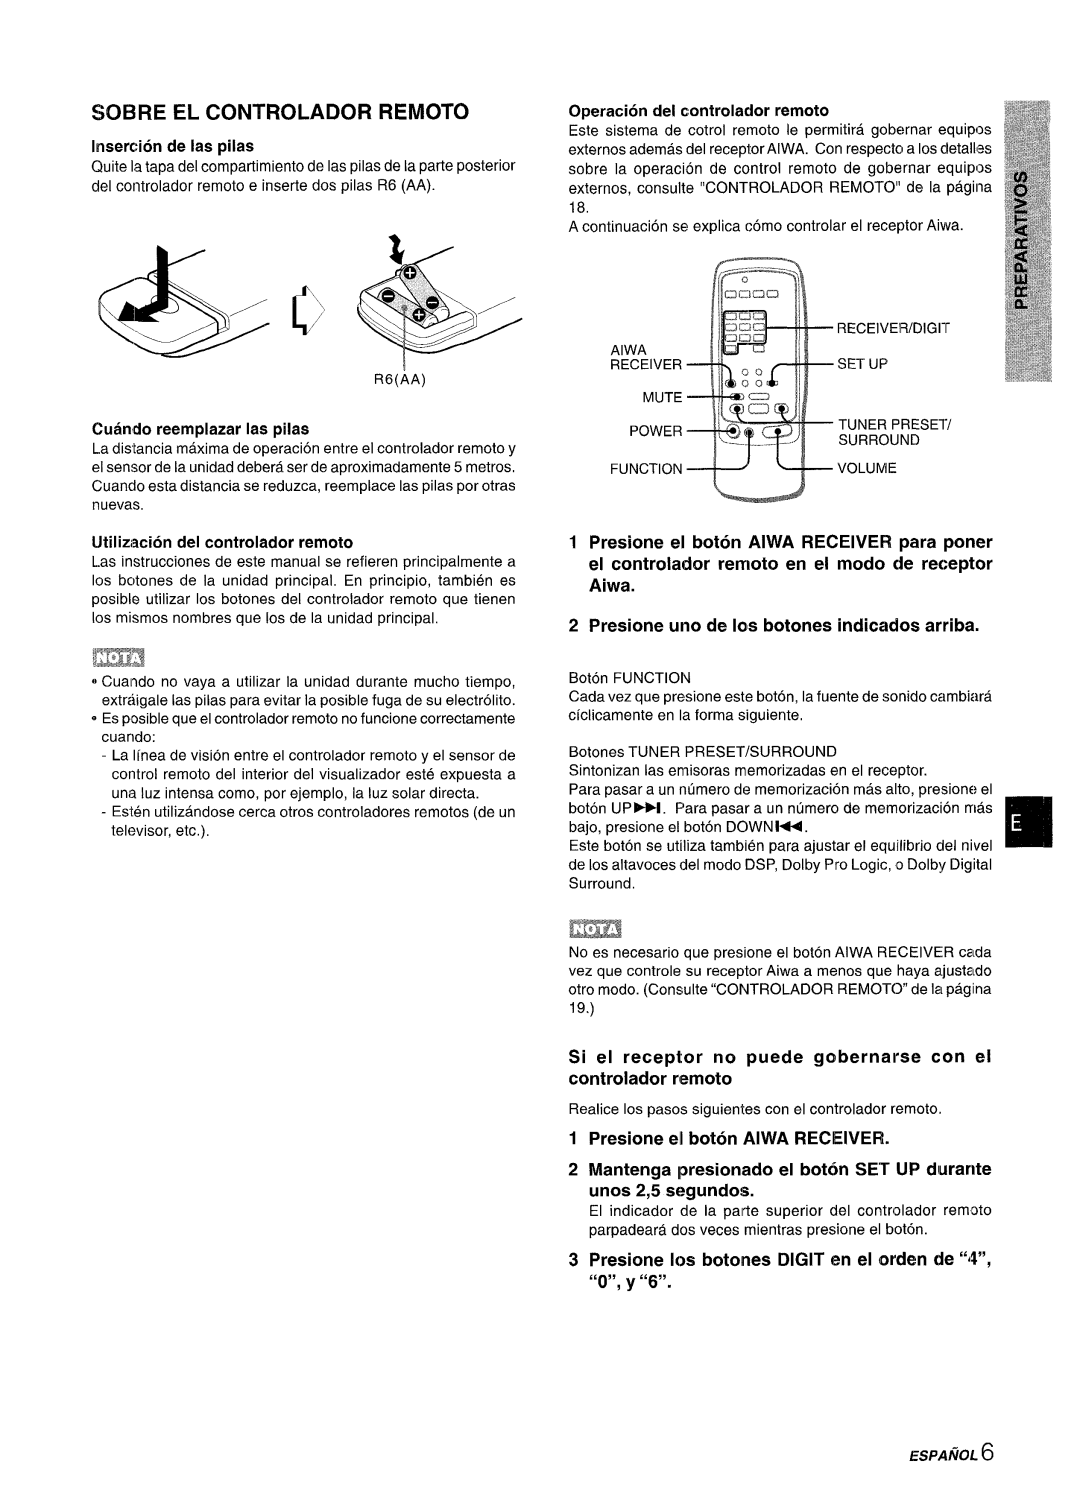 Sony AV-DV75 manual ‘uNcT’ONvvOLu”, Sobre El Controlador Remoto, Insertion de Ias pilas, Cuando reemplazar Ias pilas 